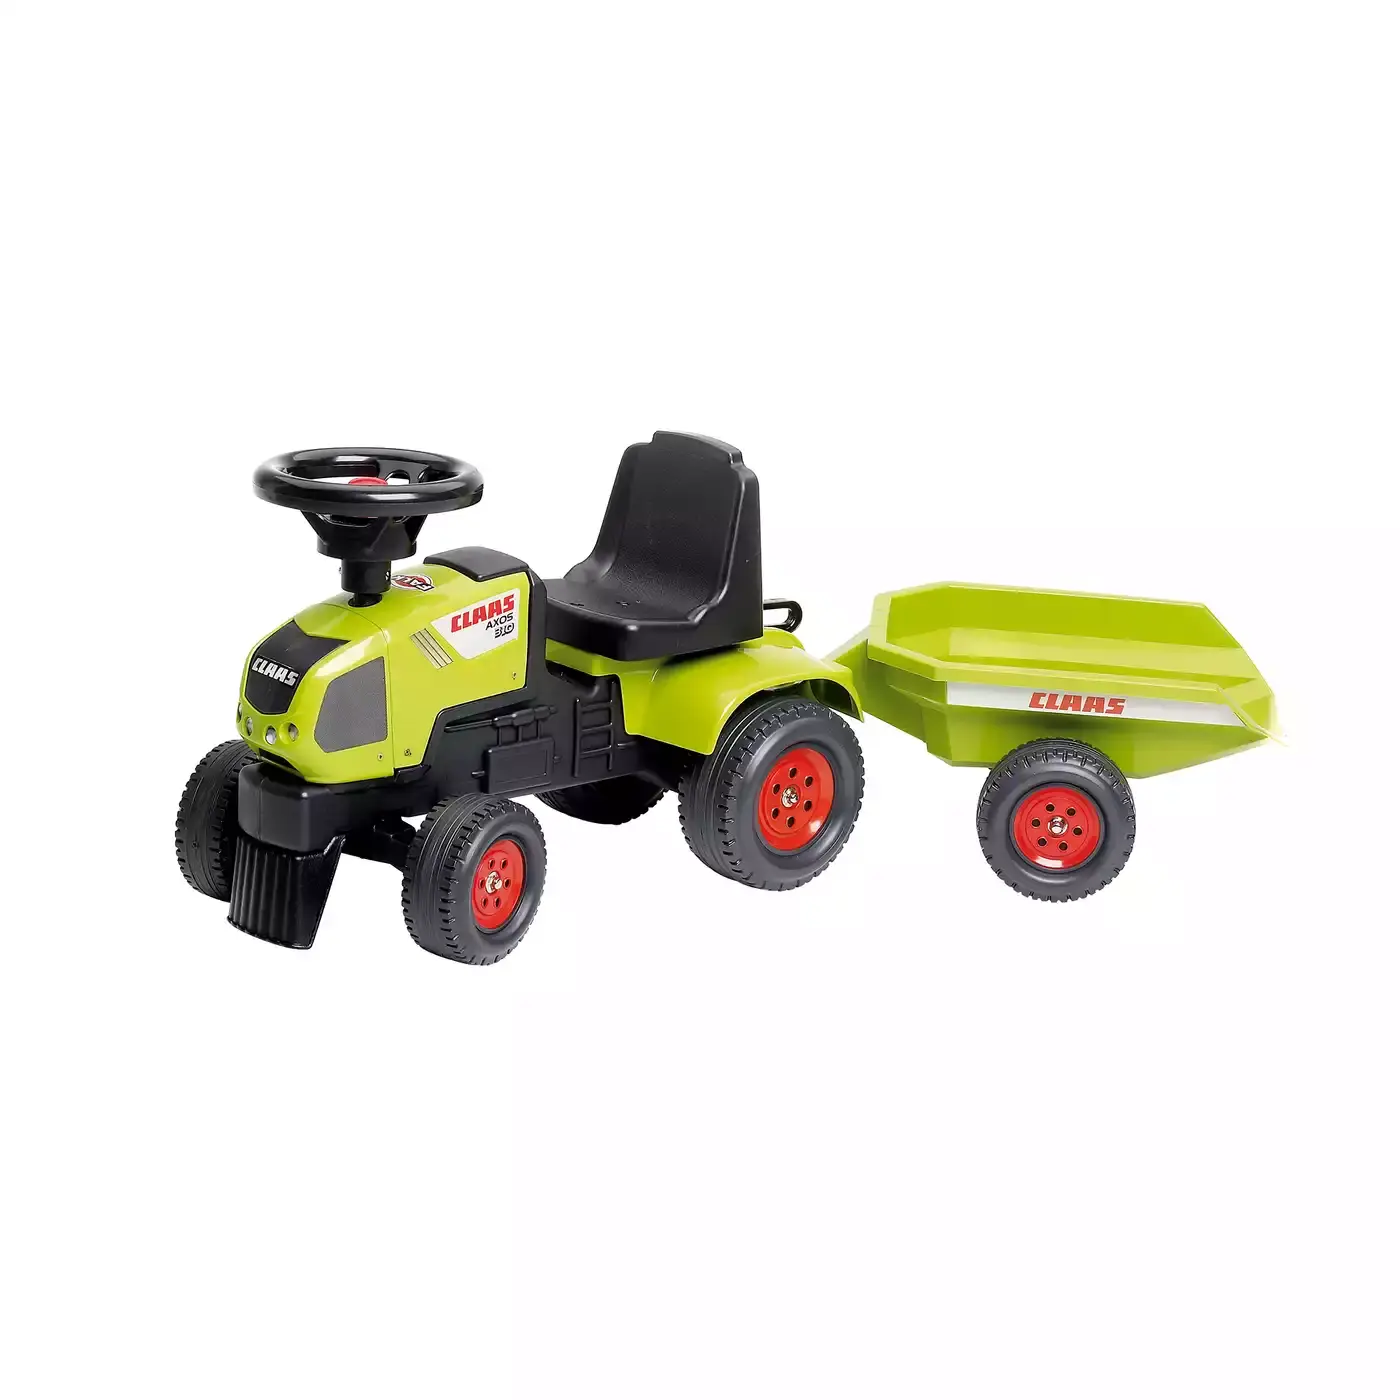 Claas Traktorrutscher Spielzeugring 2000572582902 1